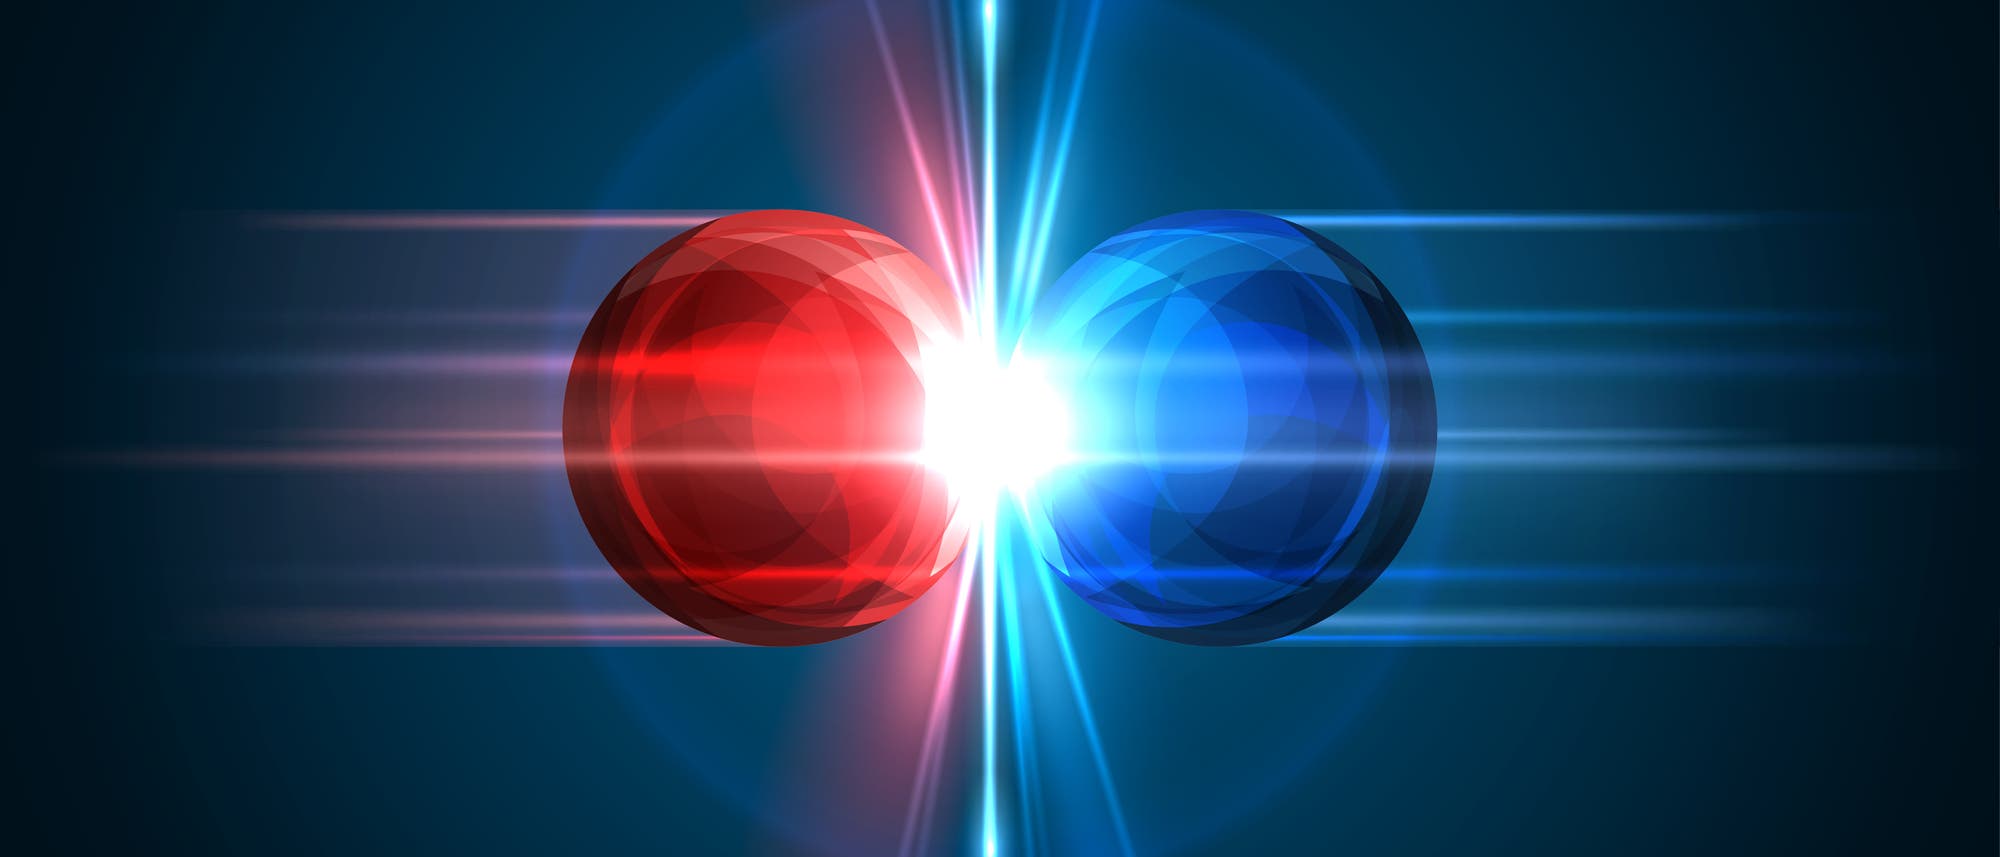 Eine rote und eine blaue Kugel treffen sich und am Kontaktpunkt gibt es einen Lichtblitz. Es soll eine Materie-Antimaterie-Kollision darstellen, tut das aber in wirklich jeder Hinsicht falsch. 